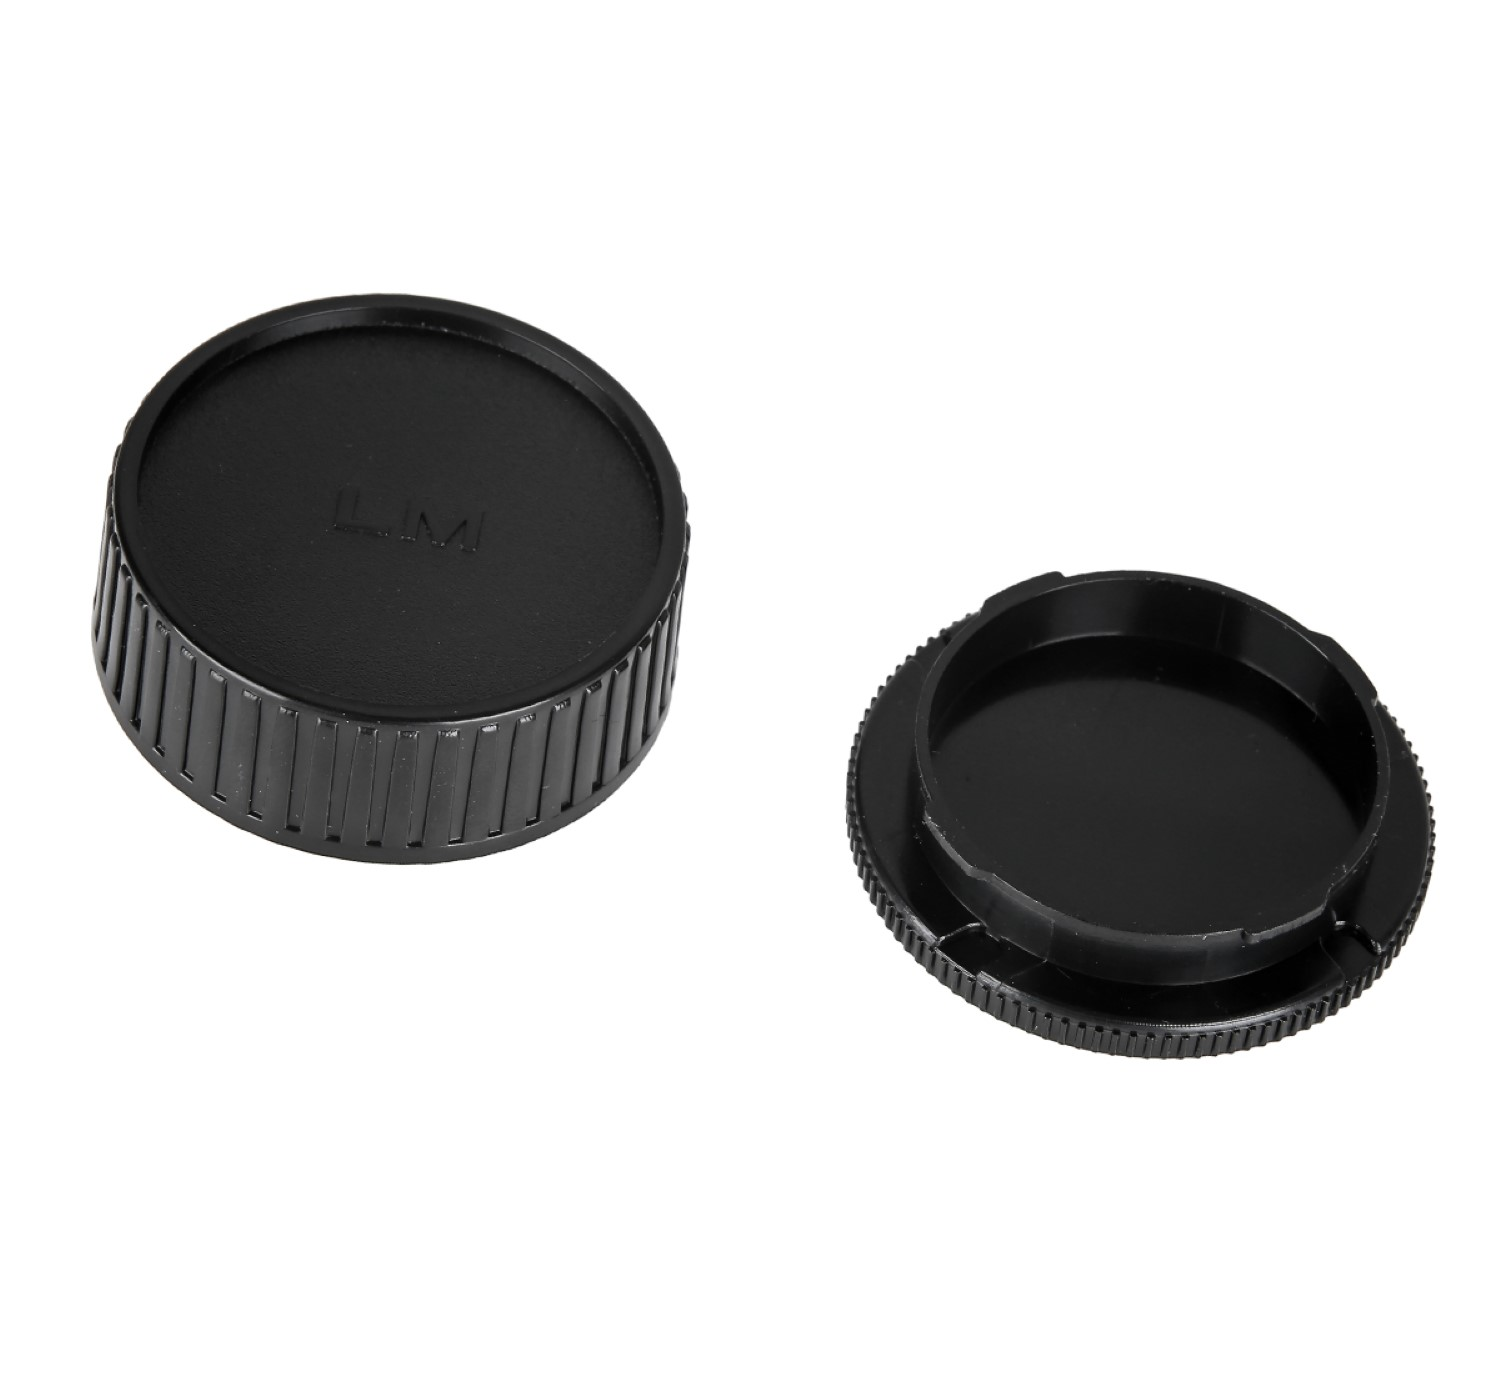 Objektivdeckel, Body Leica für Gehäusedeckel, AYEX Gehäusedeckel passend M Black, +